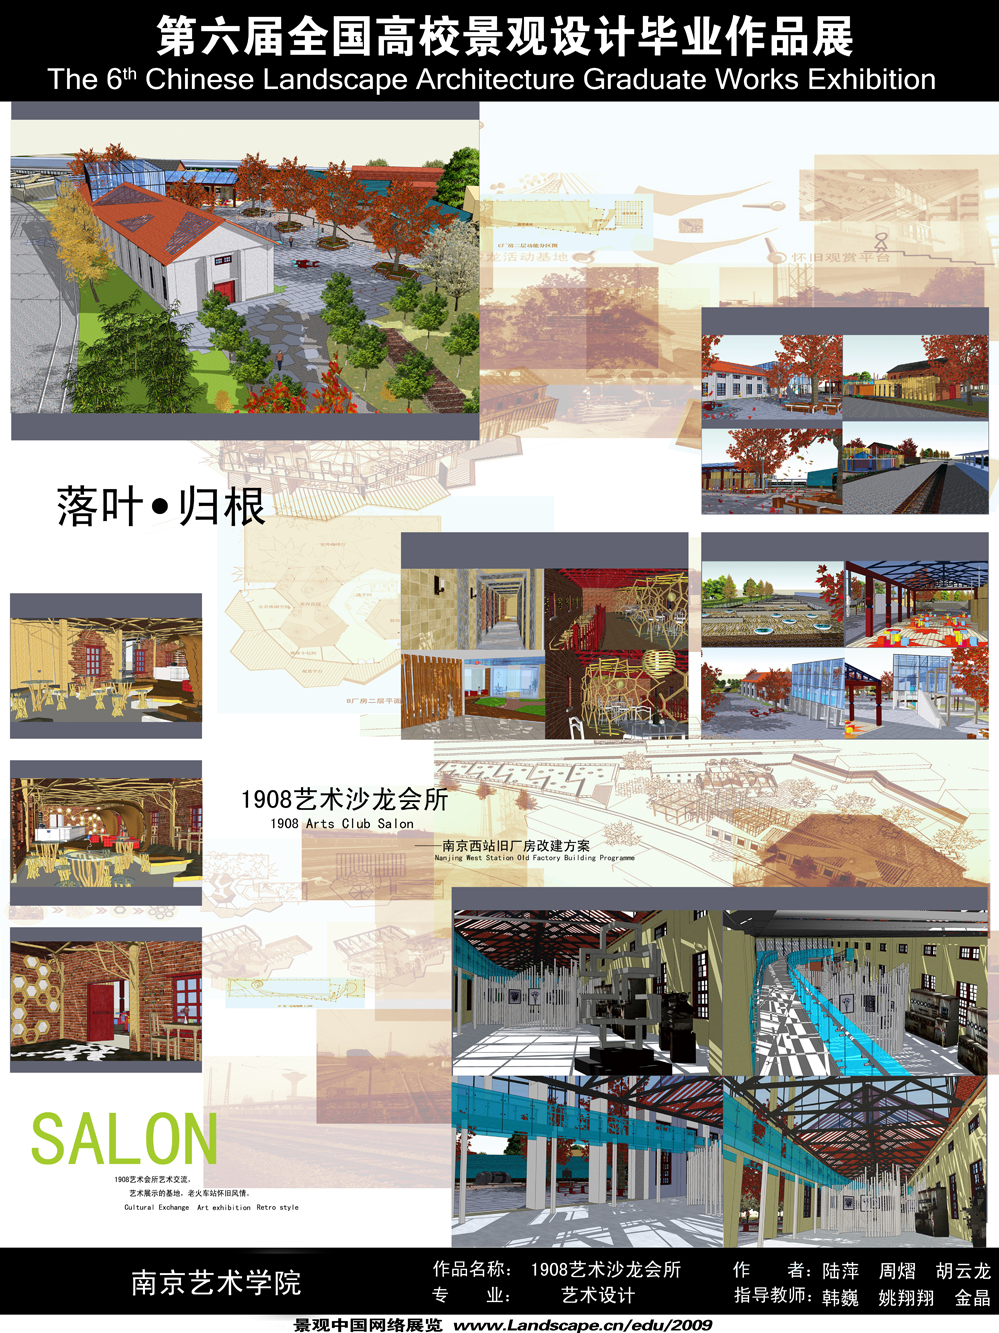 1908艺术沙龙会所——南京西站旧厂房改造方案-2